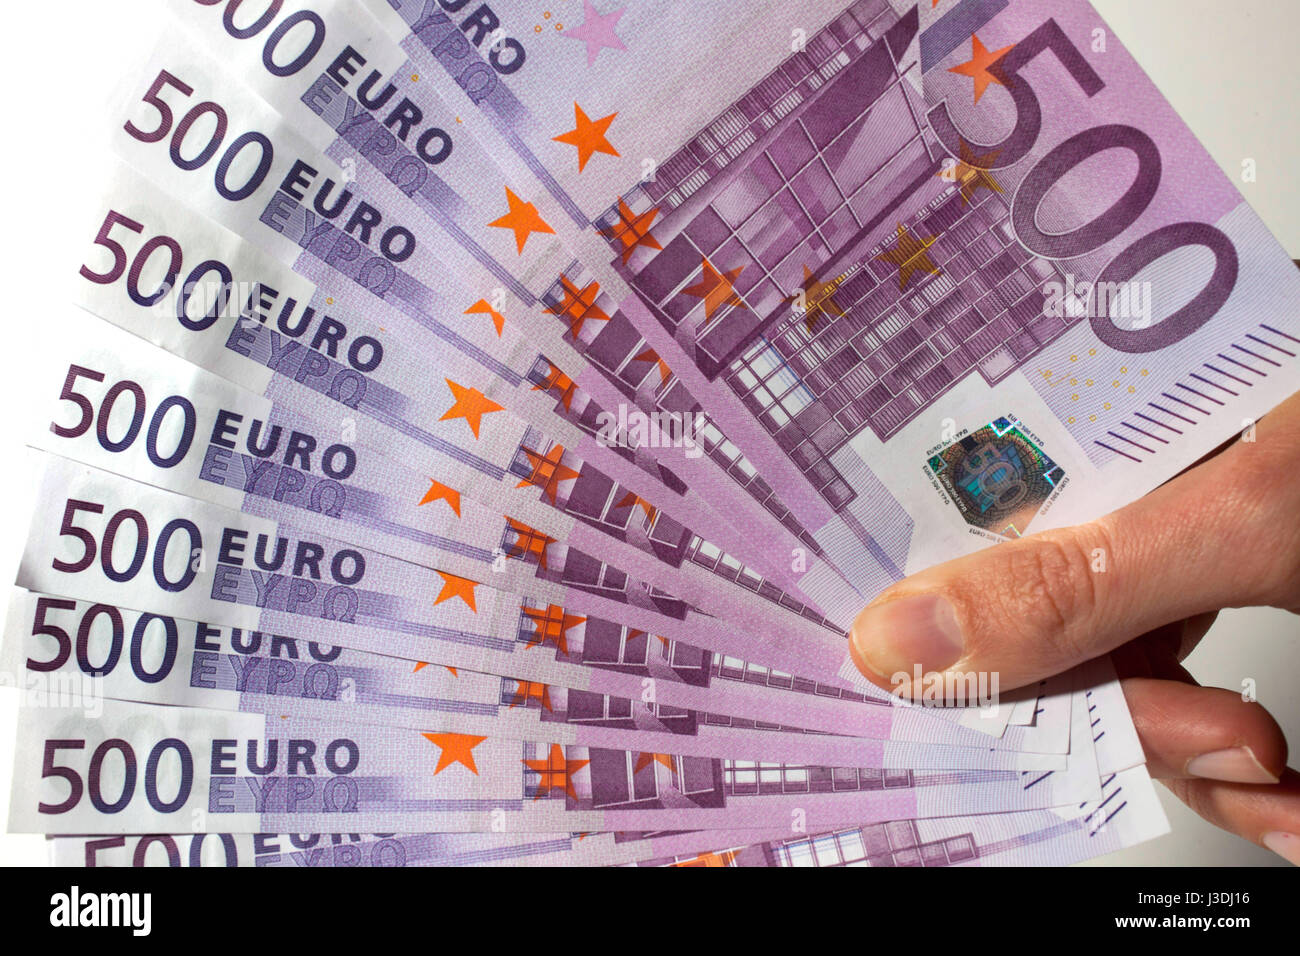 500 euro notes Stock Photo - Alamy